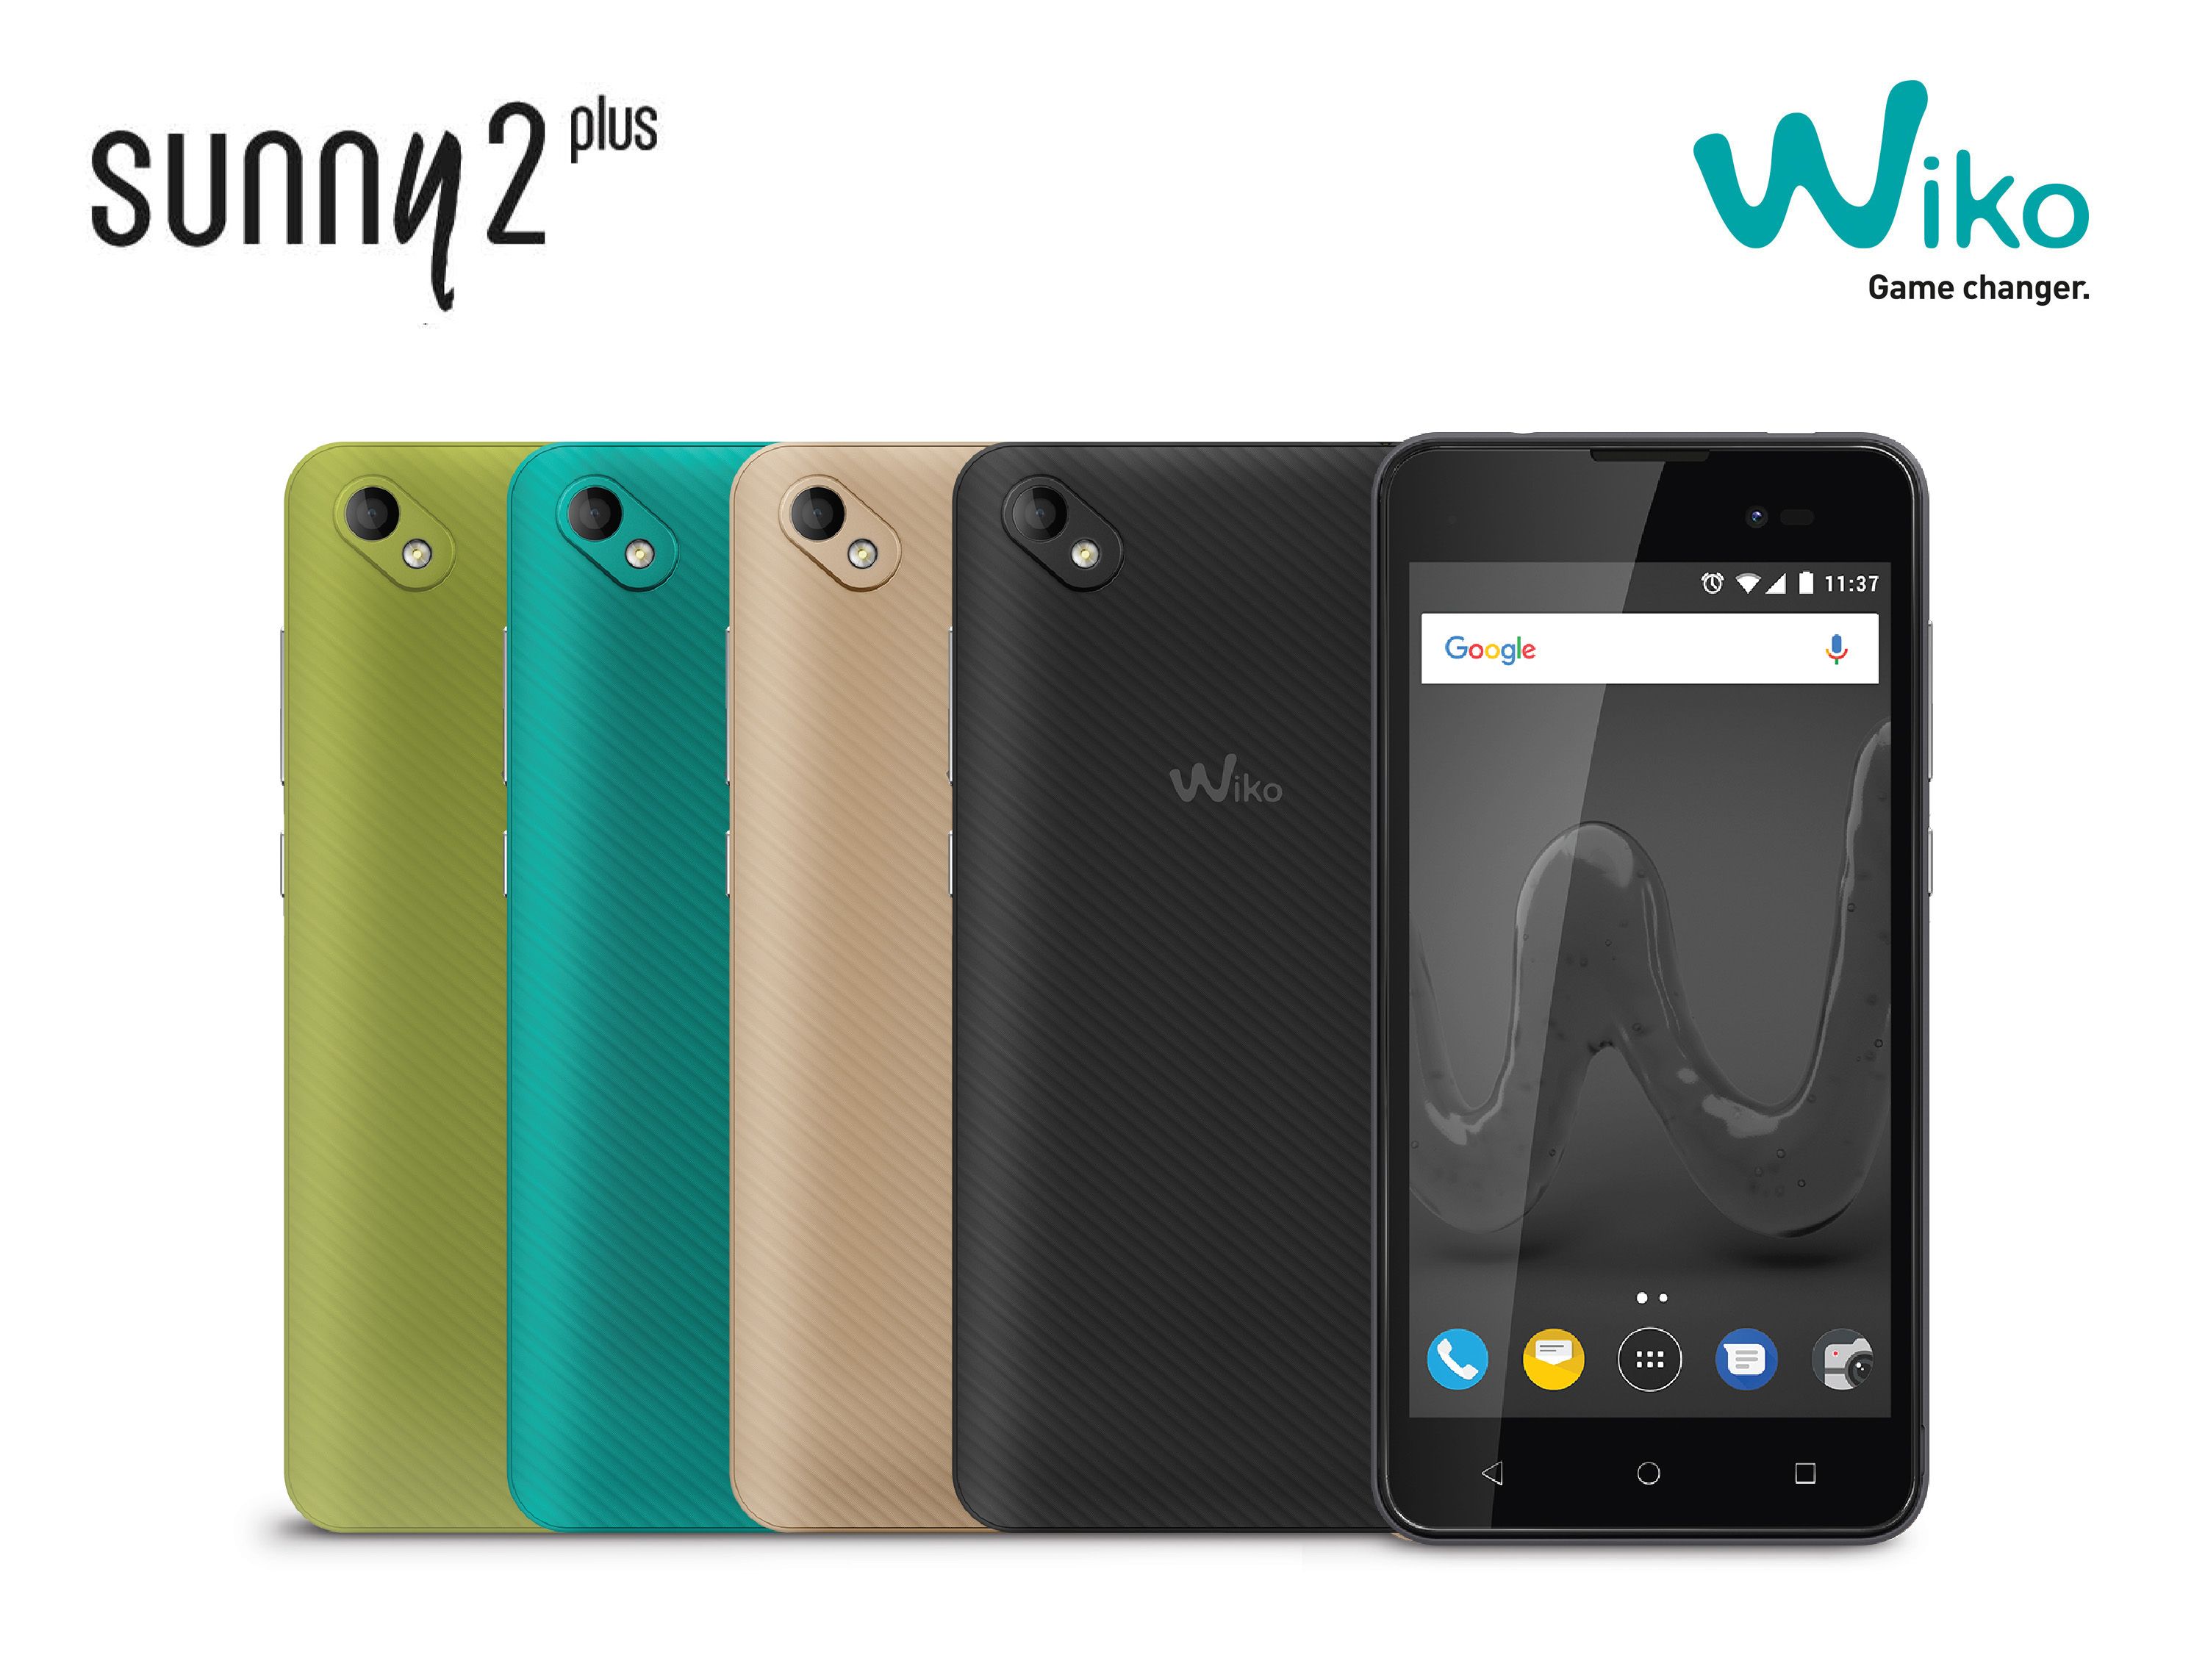 Wiko เปิดตัวสมาร์ทโฟน Sunny 2 Plus รุ่นเล็ก ราคาสุดประหยัดแค่ 1,990 บาท